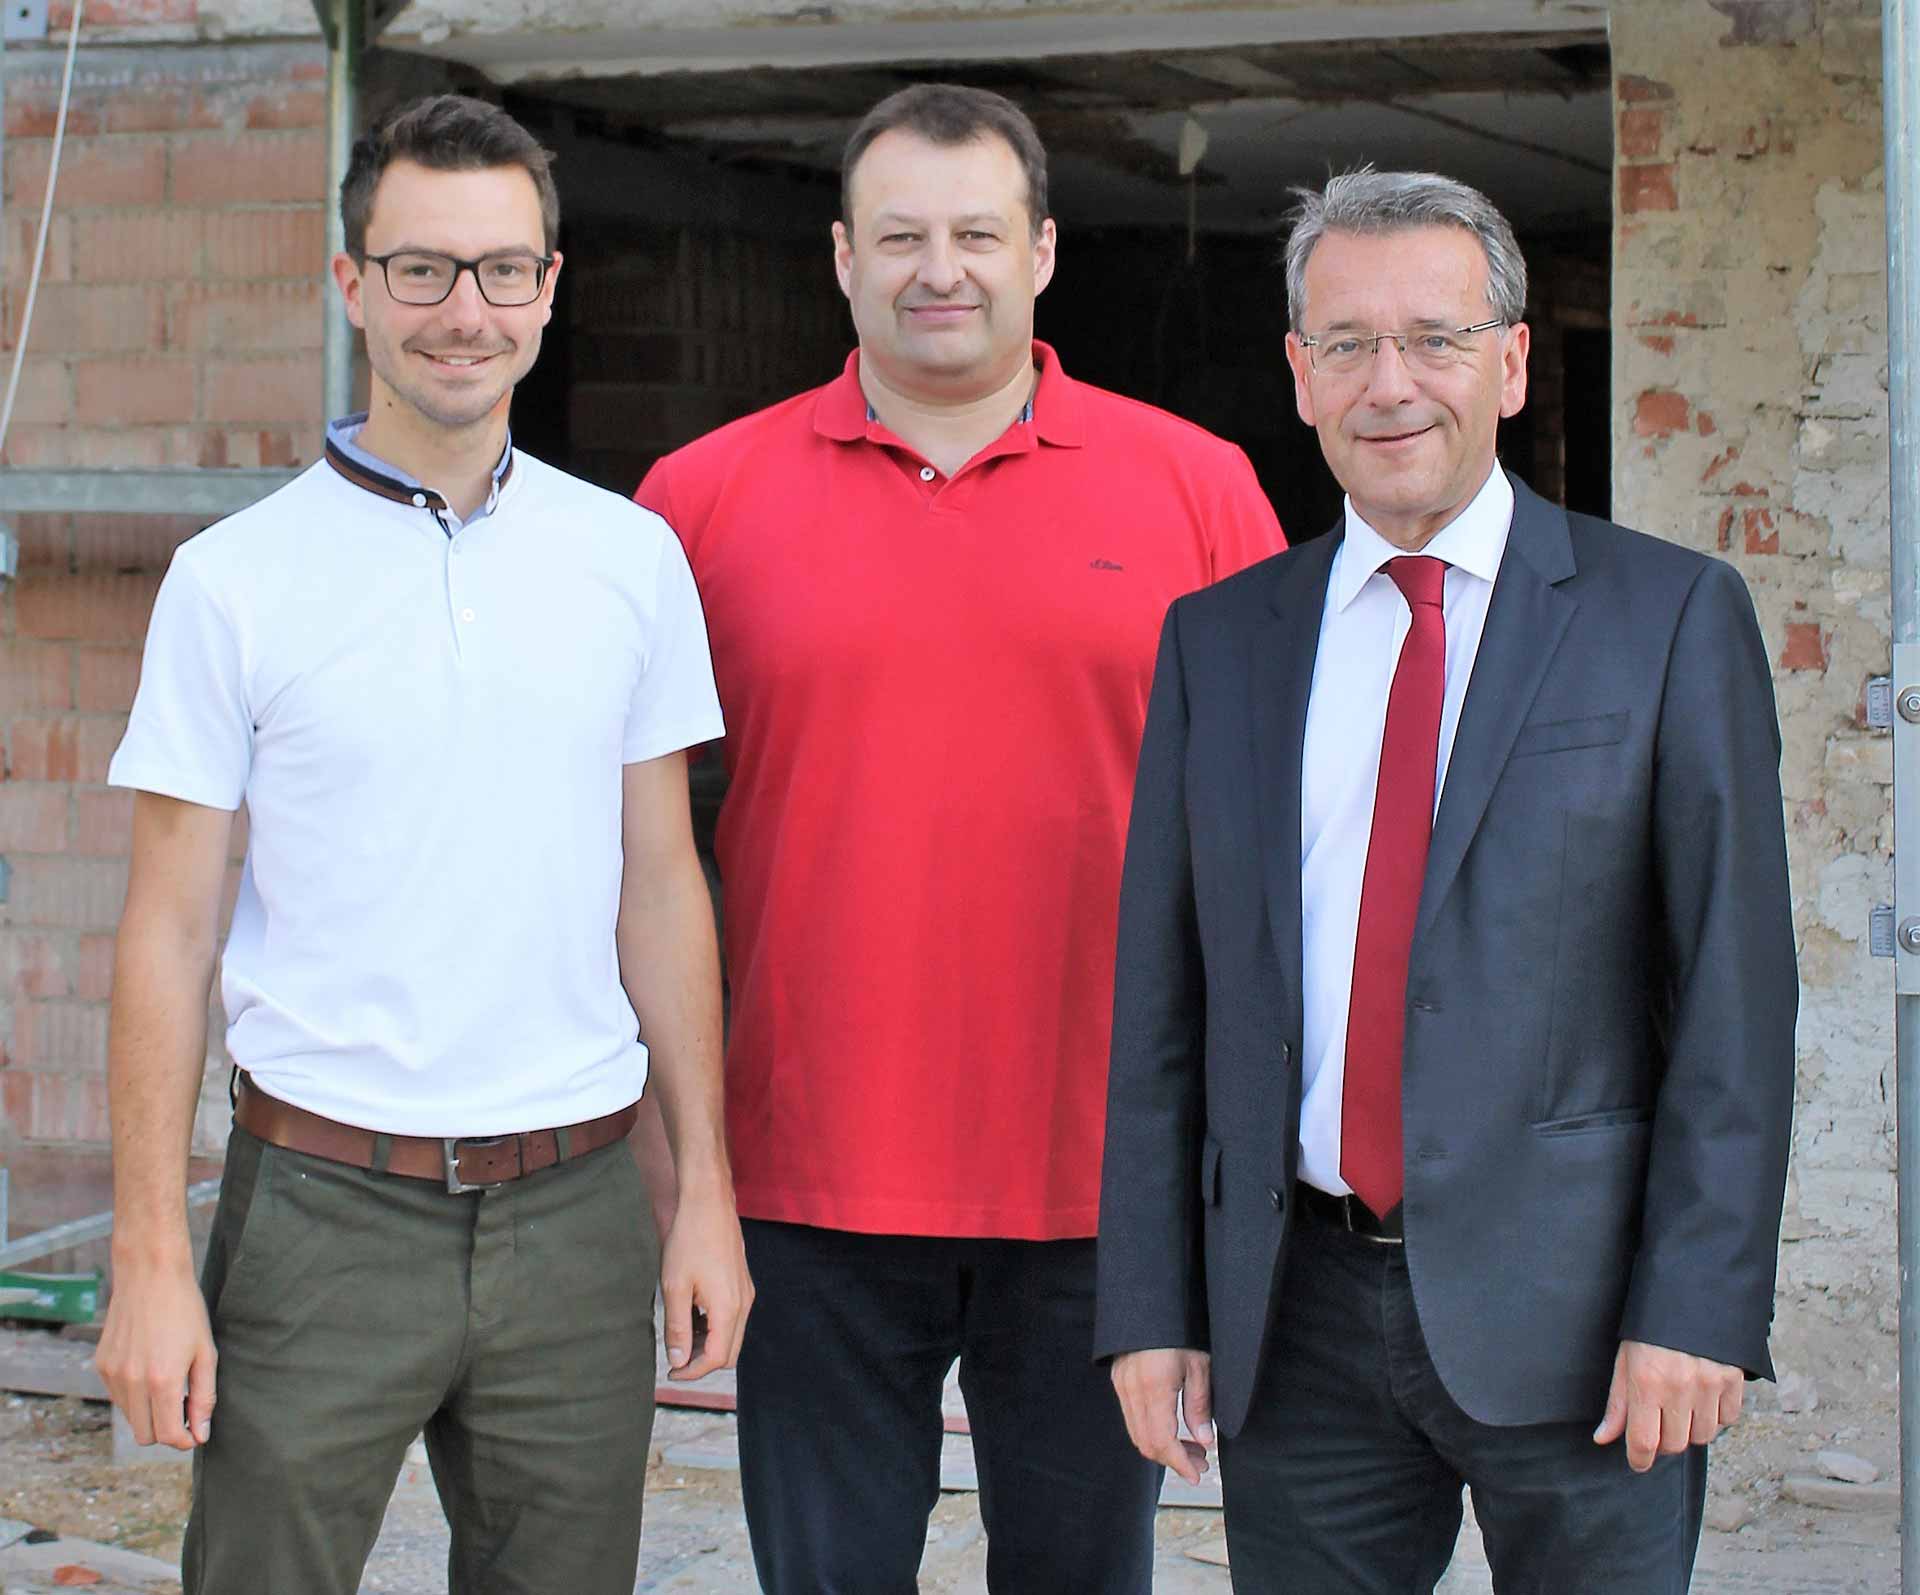 Stadtkämmerer Christian Rieger, Stadtbaumeister Andreas Schmid und Bürgermeister Horst Hartmann vor dem Rauchhaus (Foto: Kandziora)